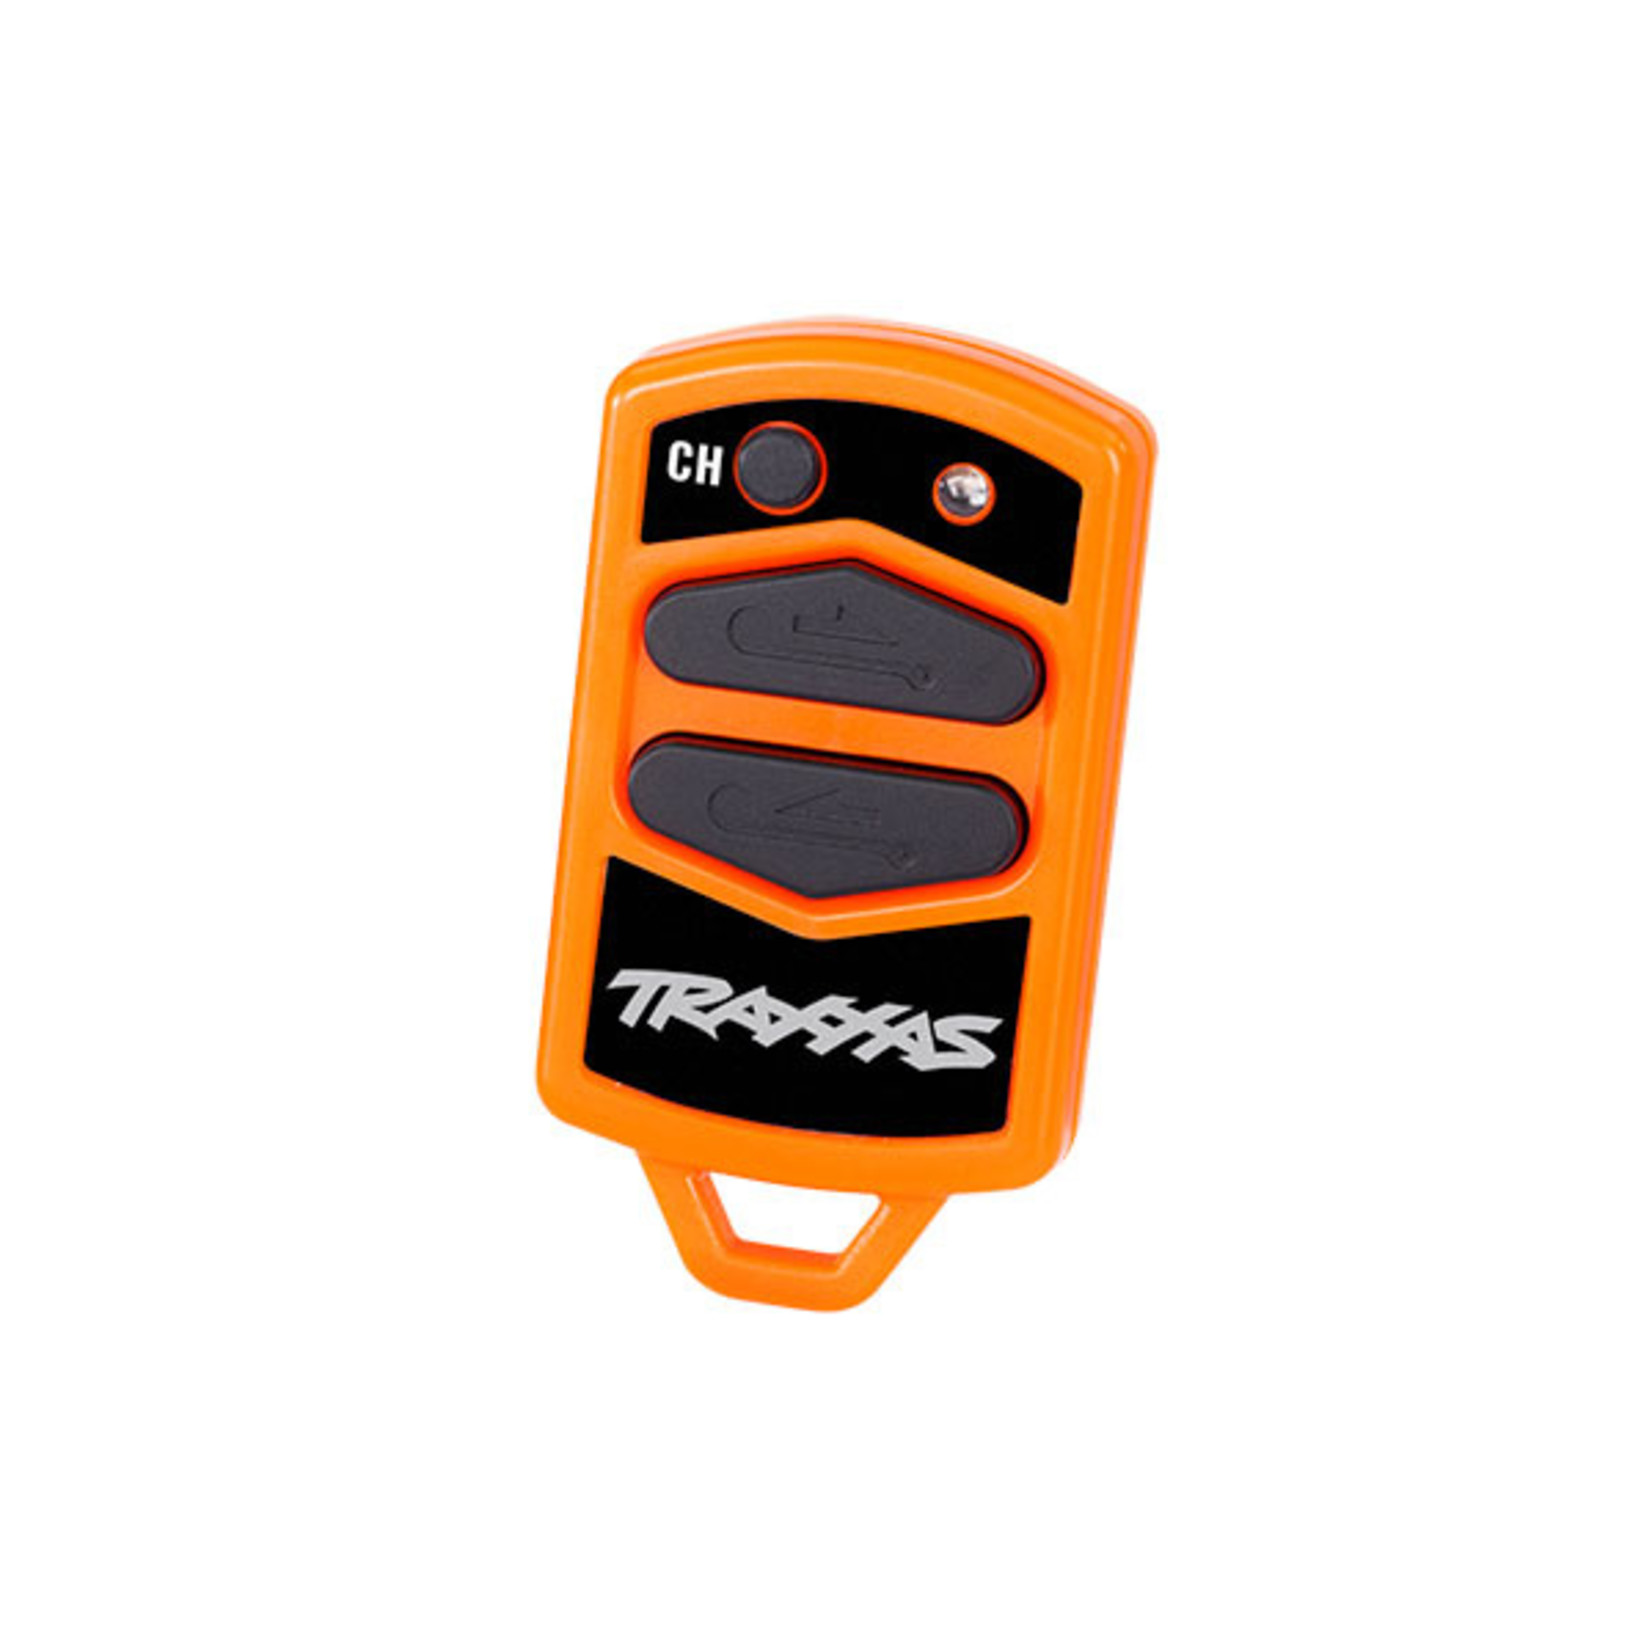 Traxxas 8857 - Wireless remote, winch, TRX-4 and TRX-6